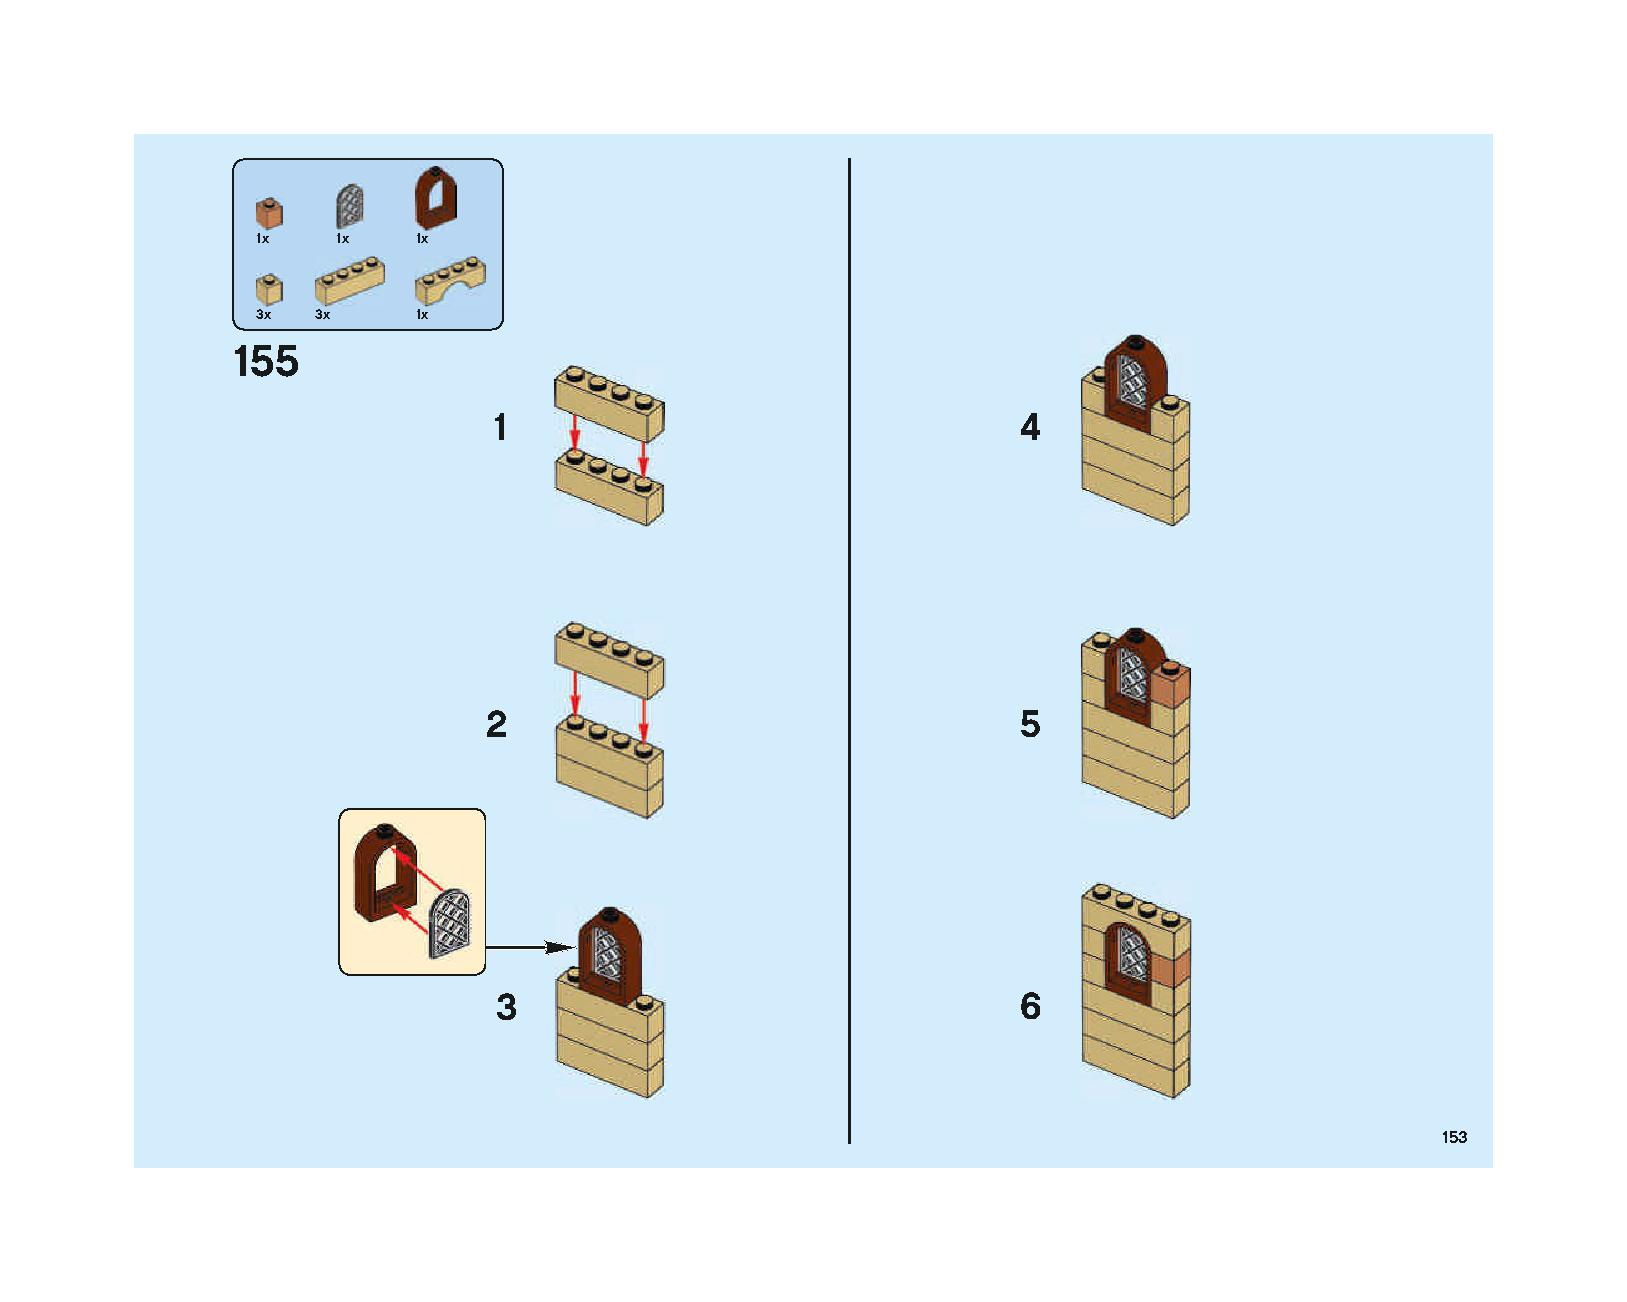 ホグワーツの大広間 75954 レゴの商品情報 レゴの説明書・組立方法 153 page